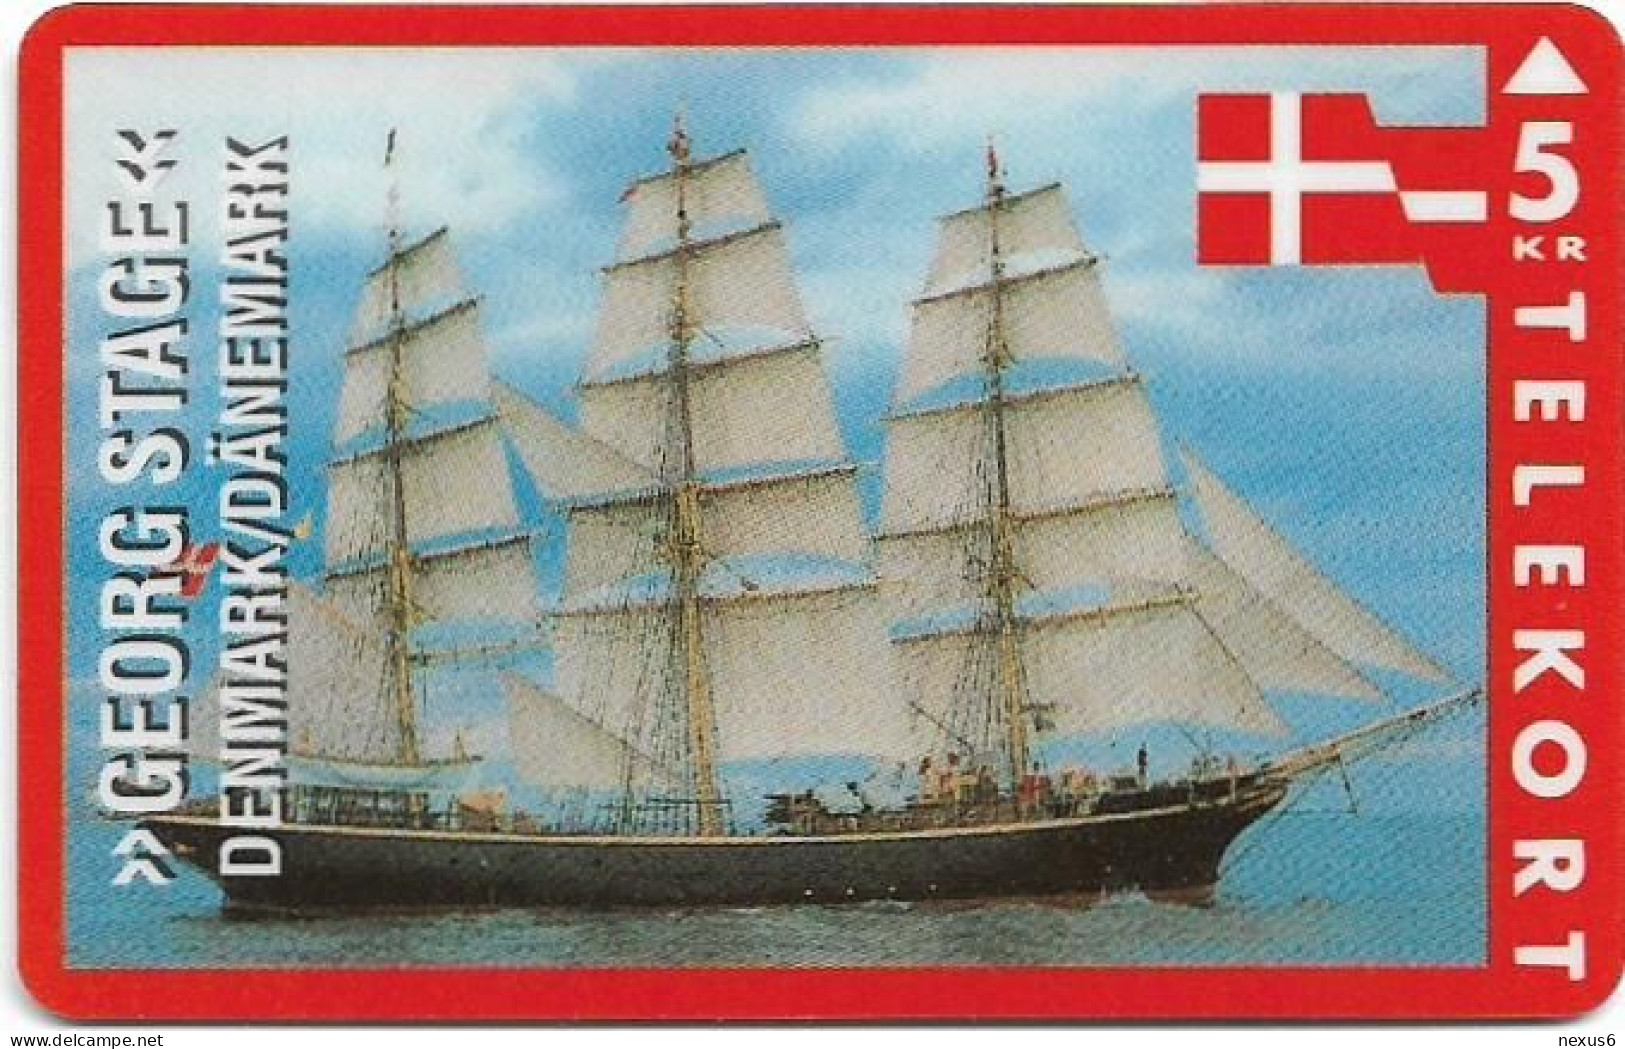 Denmark - KTAS - Ships (Red) - Denmark - Georg Stage - TDKP060 - 01.1994, 5kr, 2.500ex, Used - Danemark